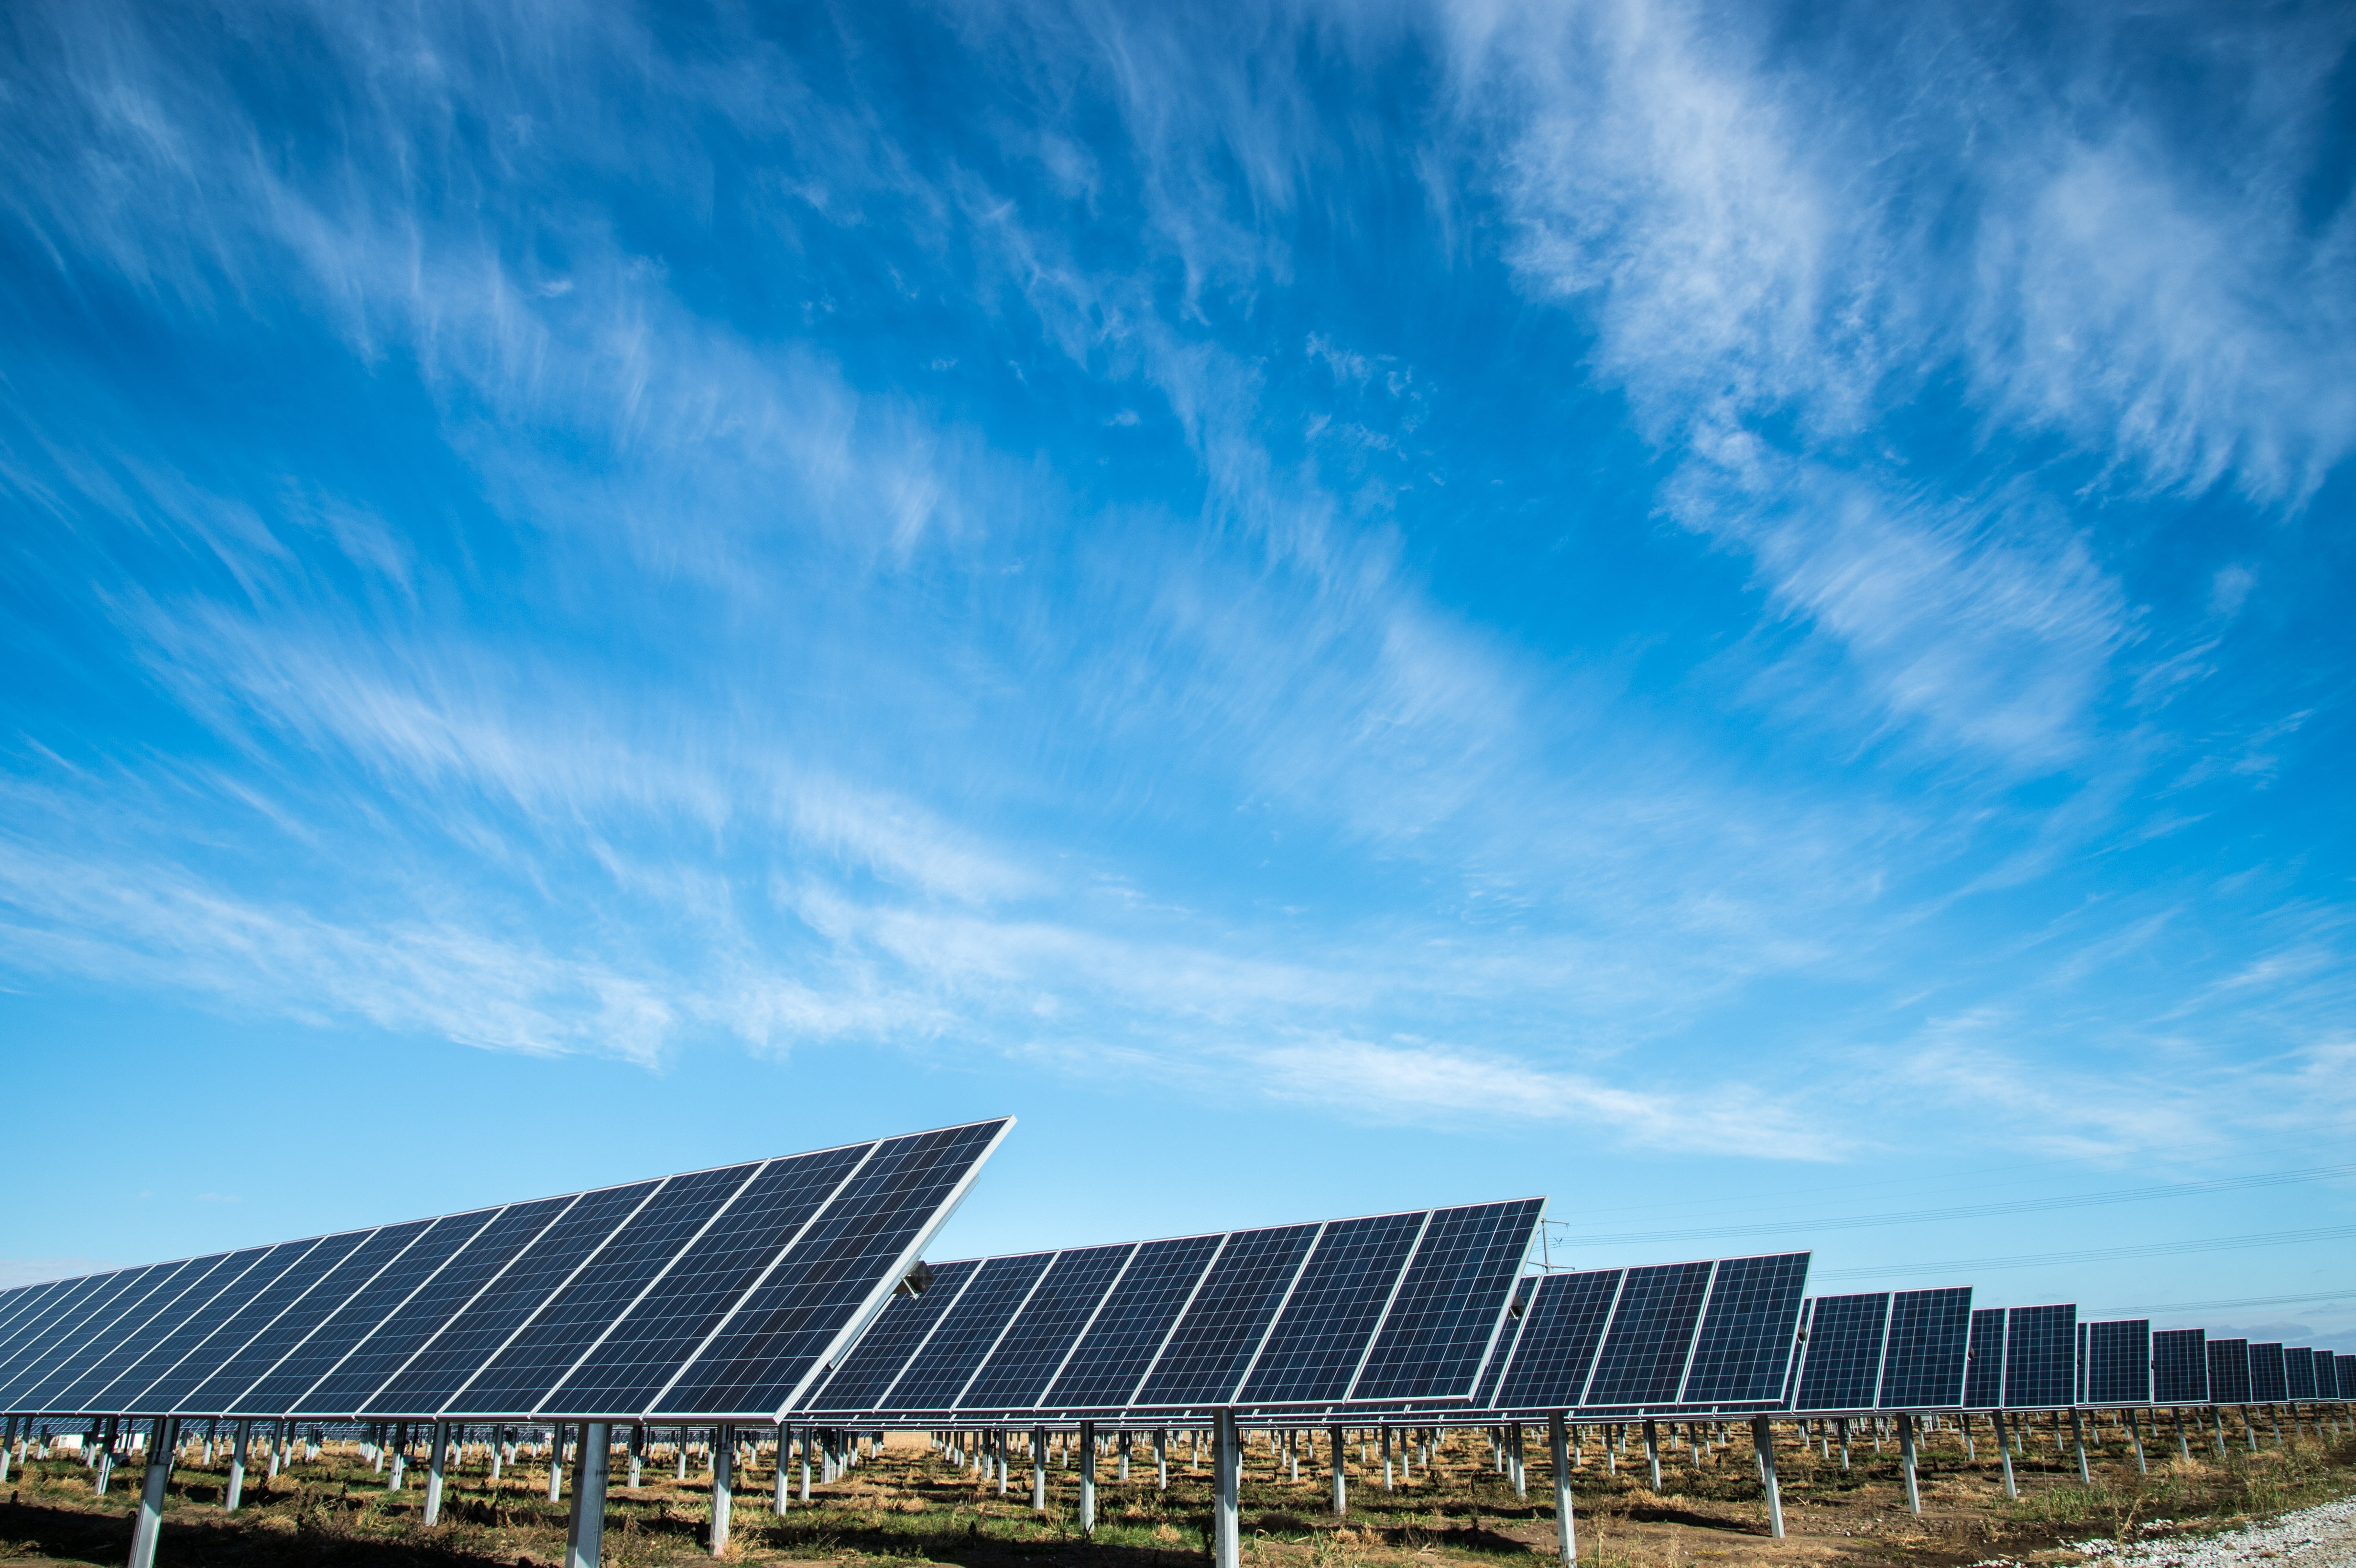 is solar energy renewable?